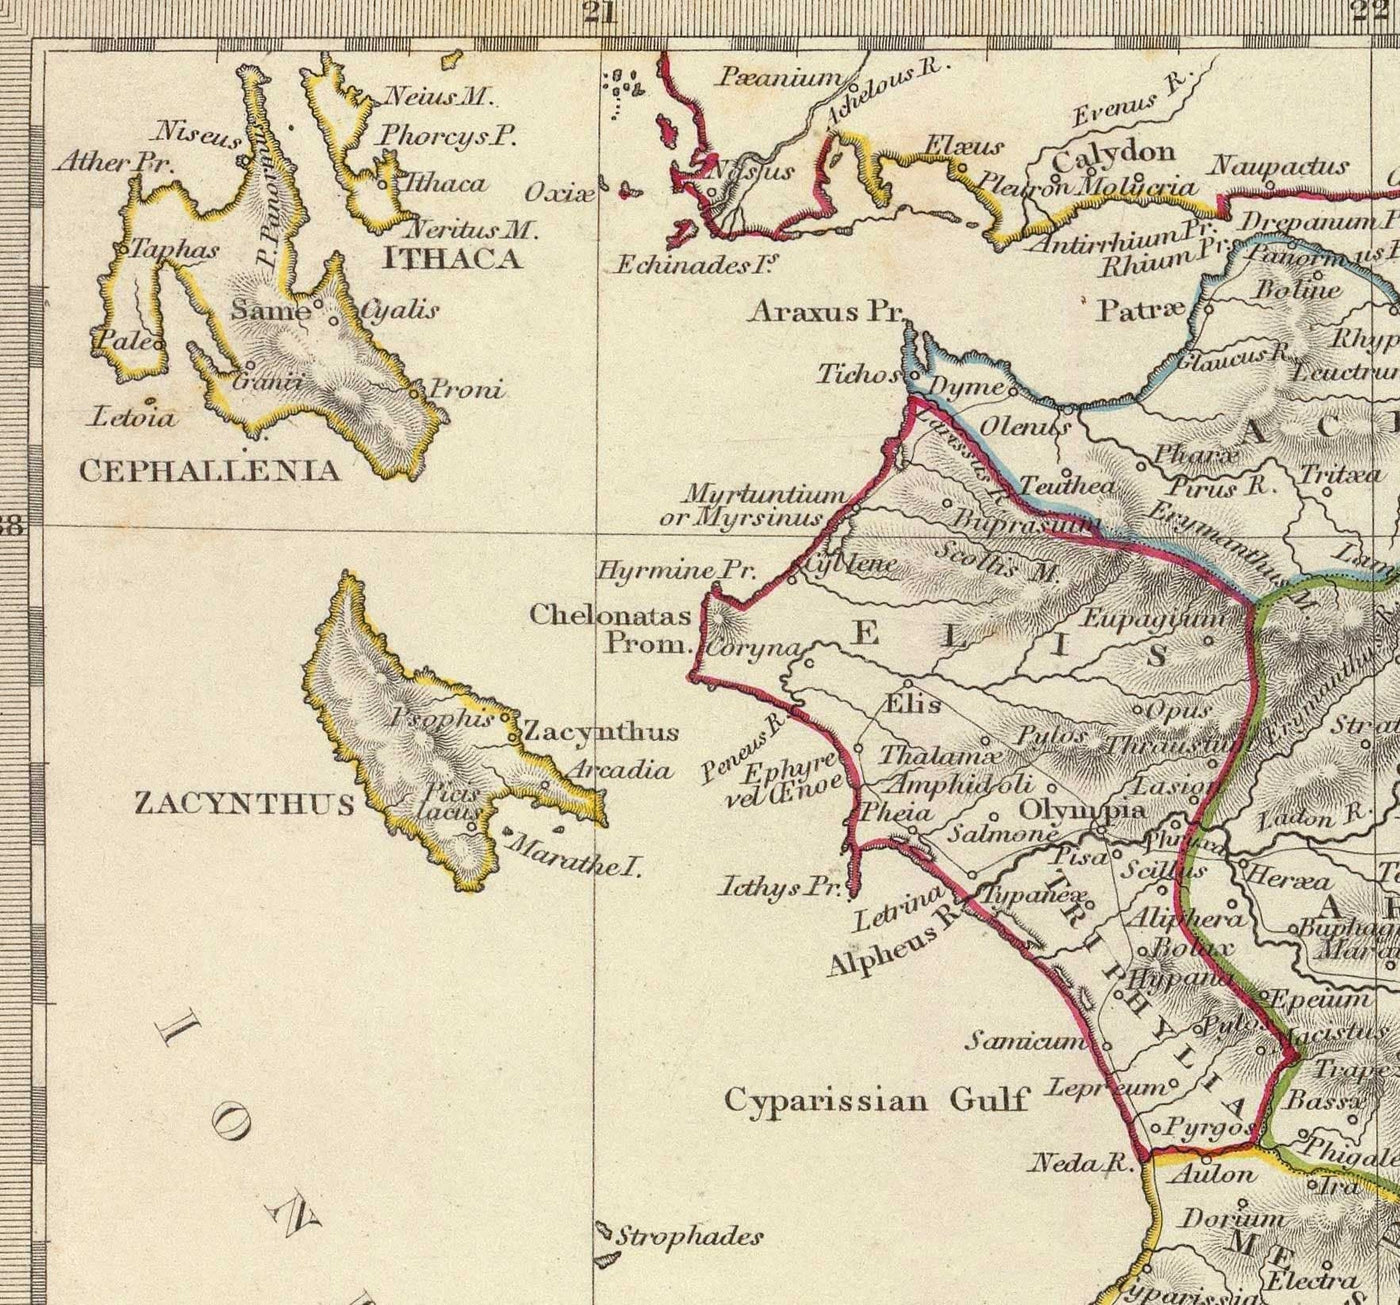 Alte Karte des antiken Griechenlands, 1829, von SDUK - Kreta, Ägäis, Athen, Arkadien, Attika, Kykladen, Zakynthos